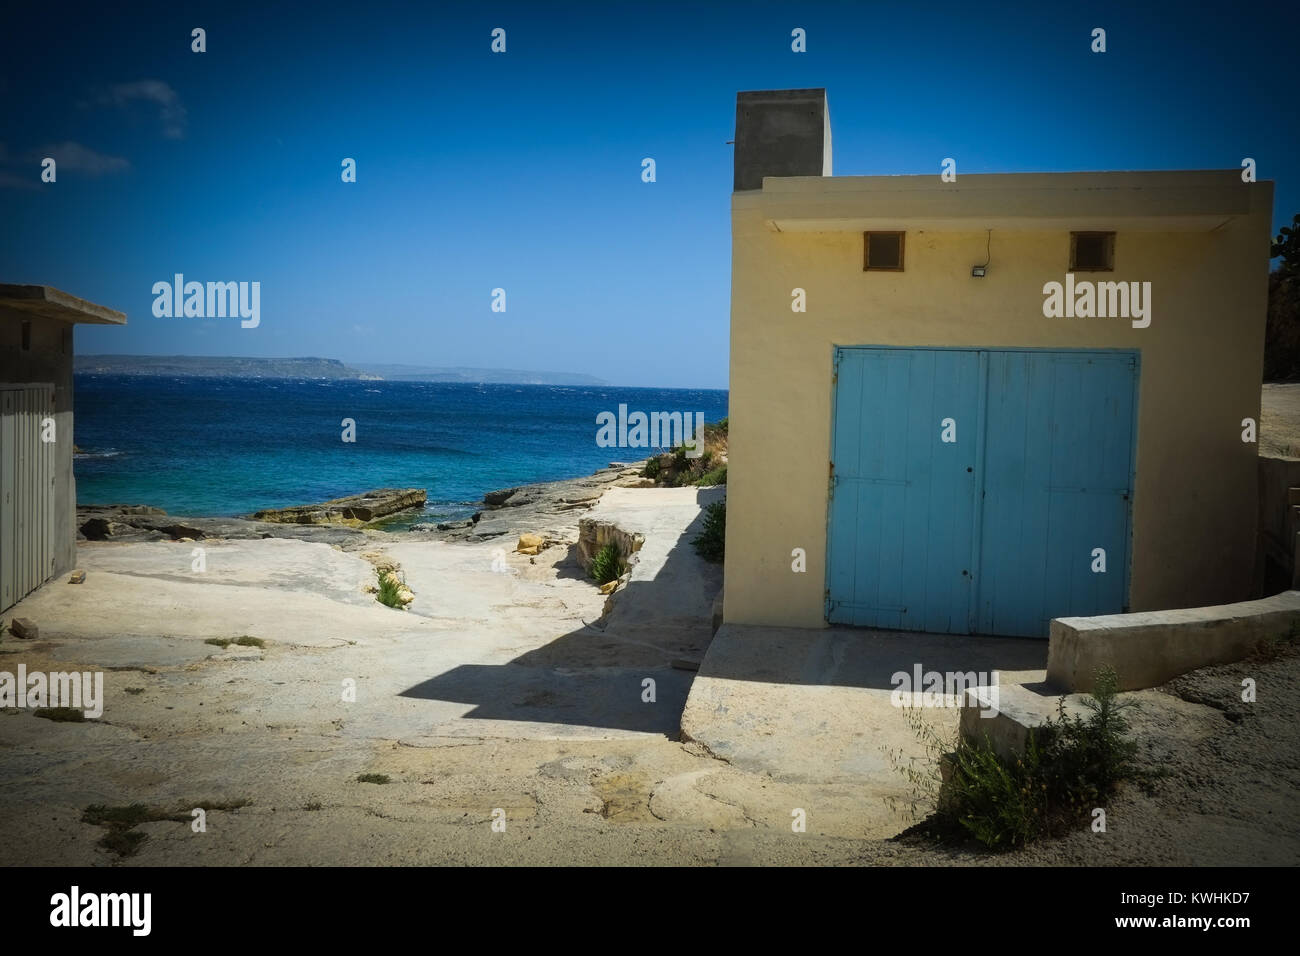 Gozo a une marche, un chemin de randonnée autour de l'ensemble de son littoral donnant une vue imprenable sur la mer, l'intérieur en passant des forts, et des cabanes de pêche et de plongée typique Banque D'Images